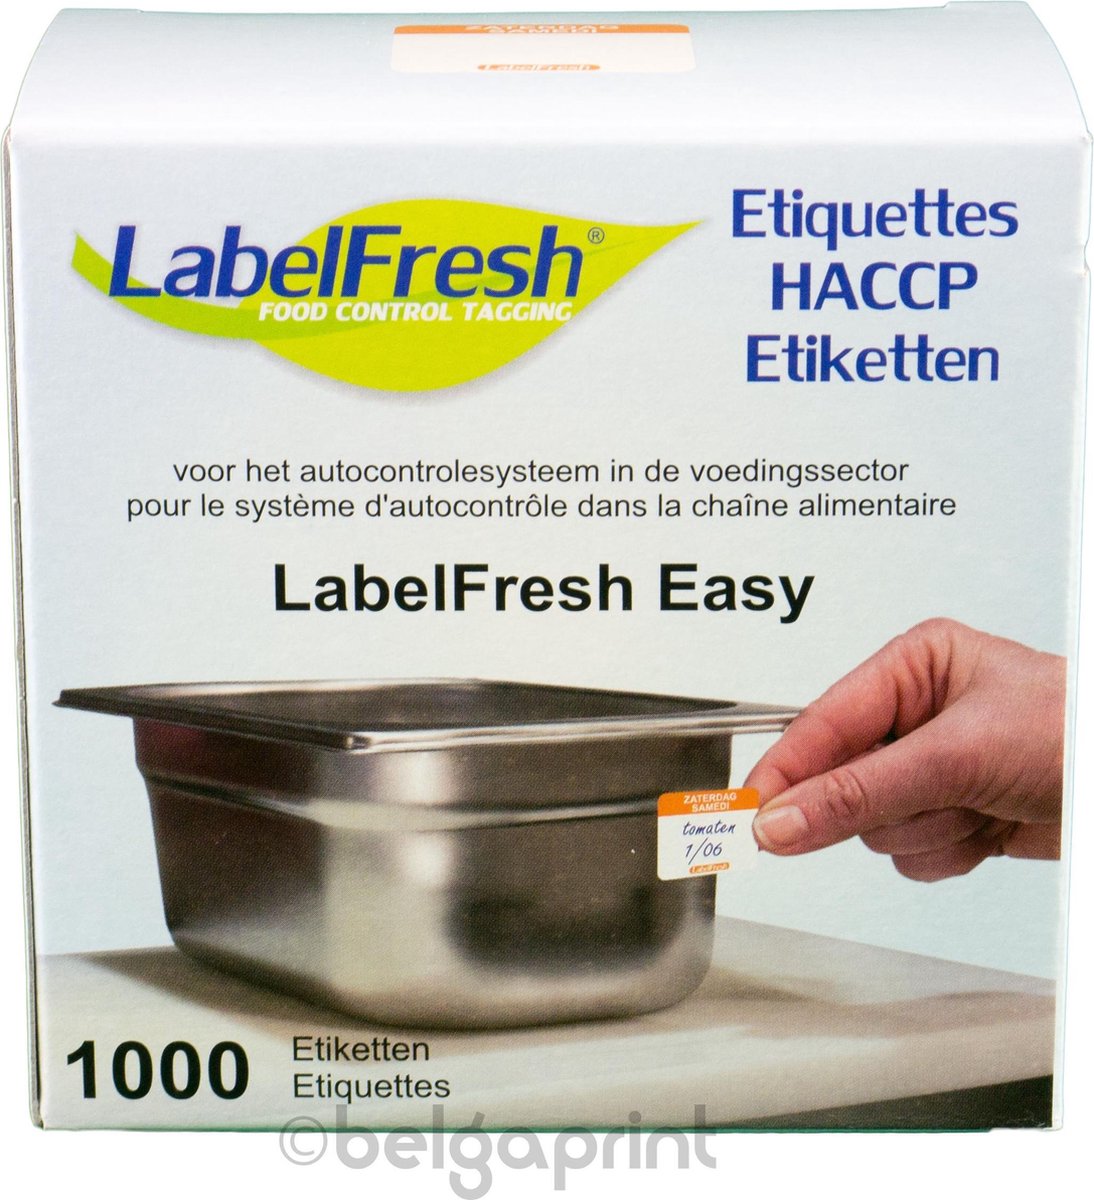 1000 LabelFresh Easy - 30x25 mm - zaterdag-samedi - HACCP etiketten / stickers